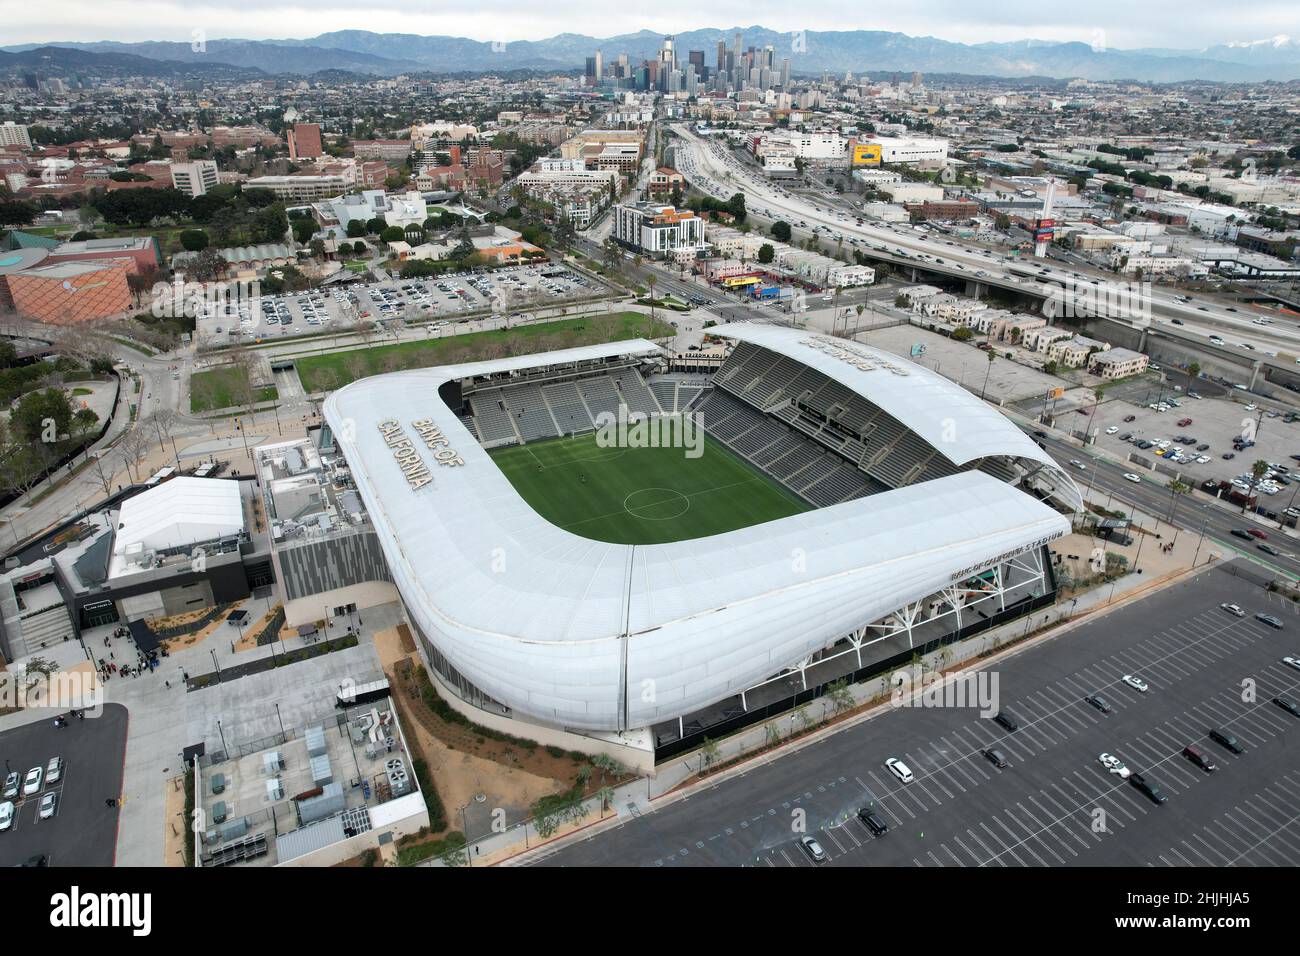 Eine Luftaufnahme des Banc of California Stadium, dem Heimstadion der LAFC-Fußballmannschaft, mit der Skyline der Innenstadt als Hintergrund, Samstag, 29. Januar 2022, Stockfoto